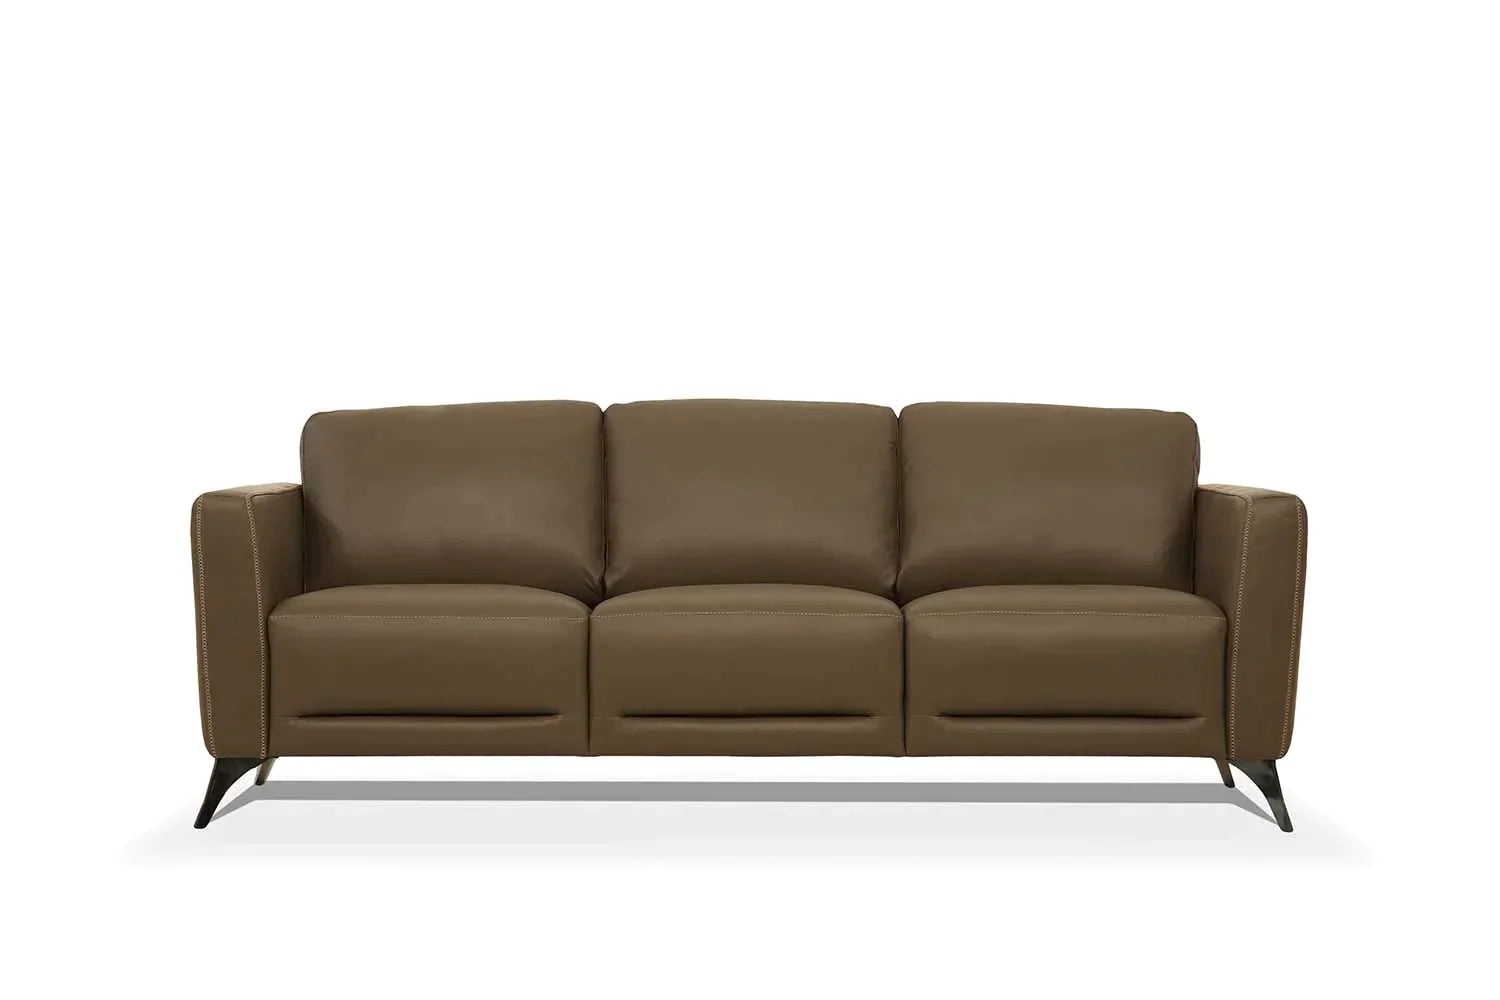 Malaga Taupe Leather Sofa Model 55000 By ACME Furniture